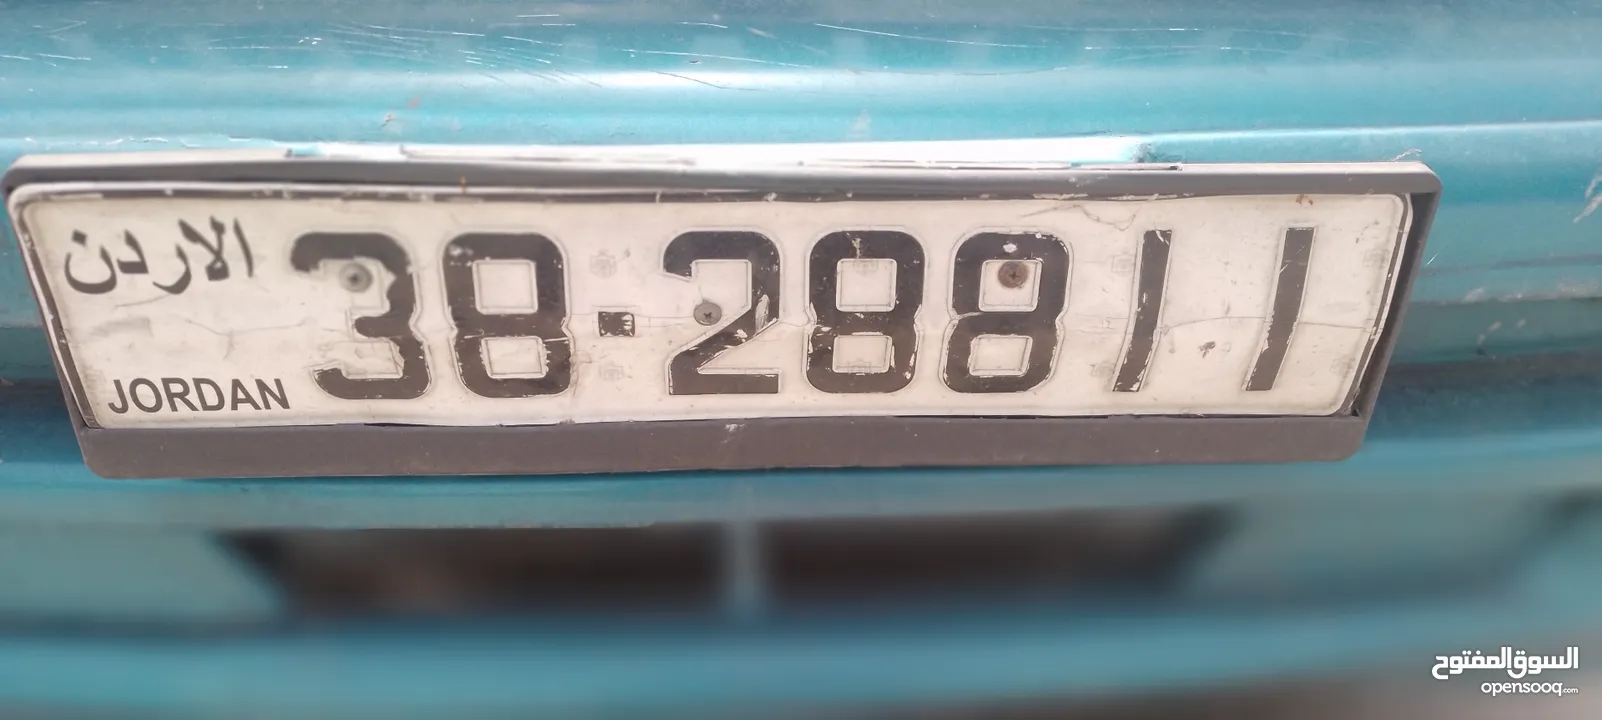 رقم سيارة خصوصي للبيع